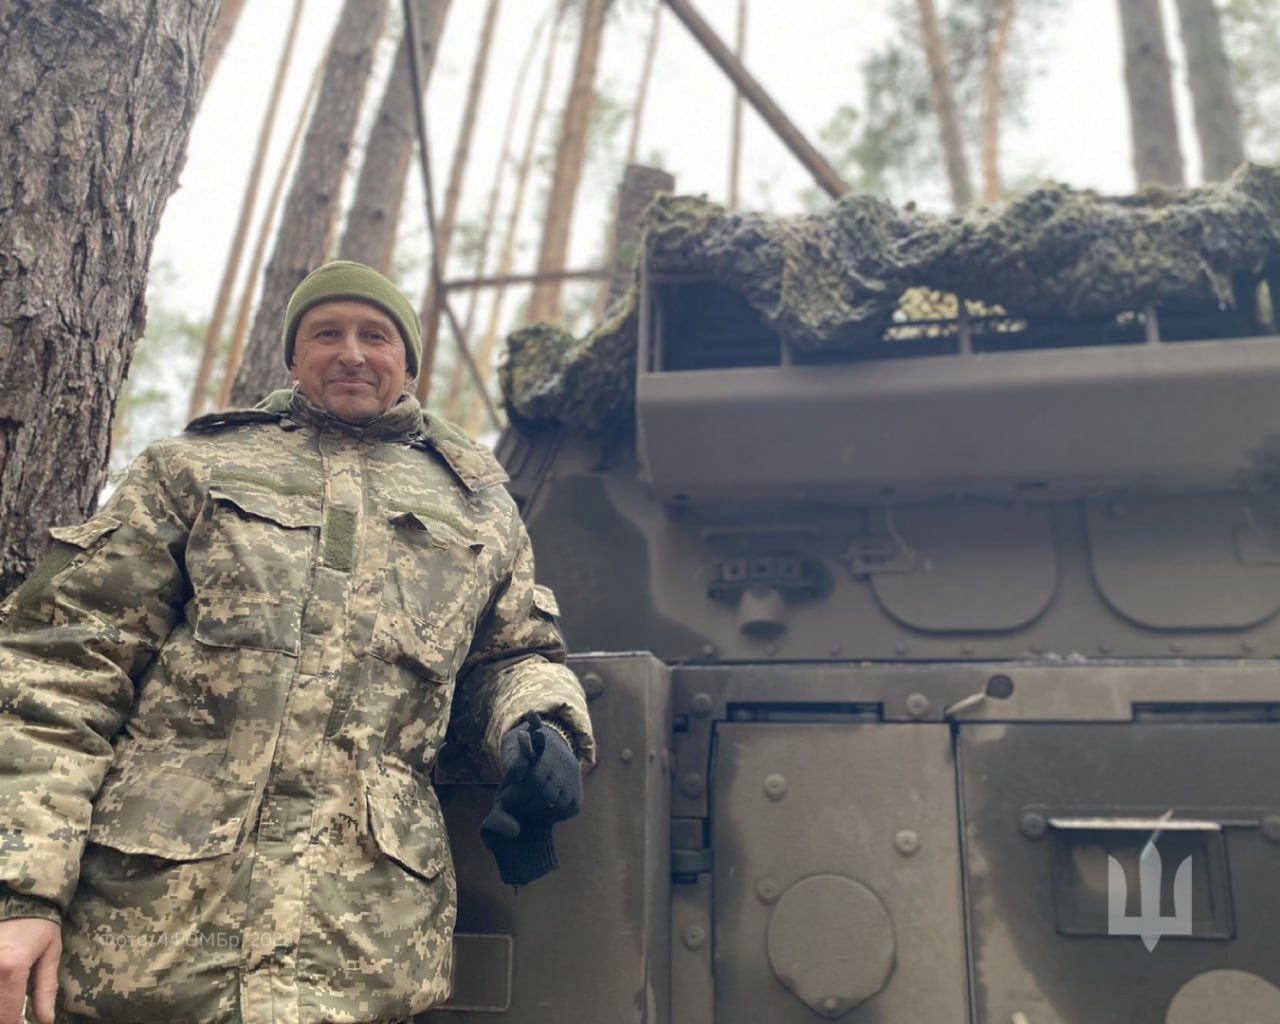 Polskie samobieżne moździerze M120 RAK w Ukrainie. To pierwsze takie zdjęcie